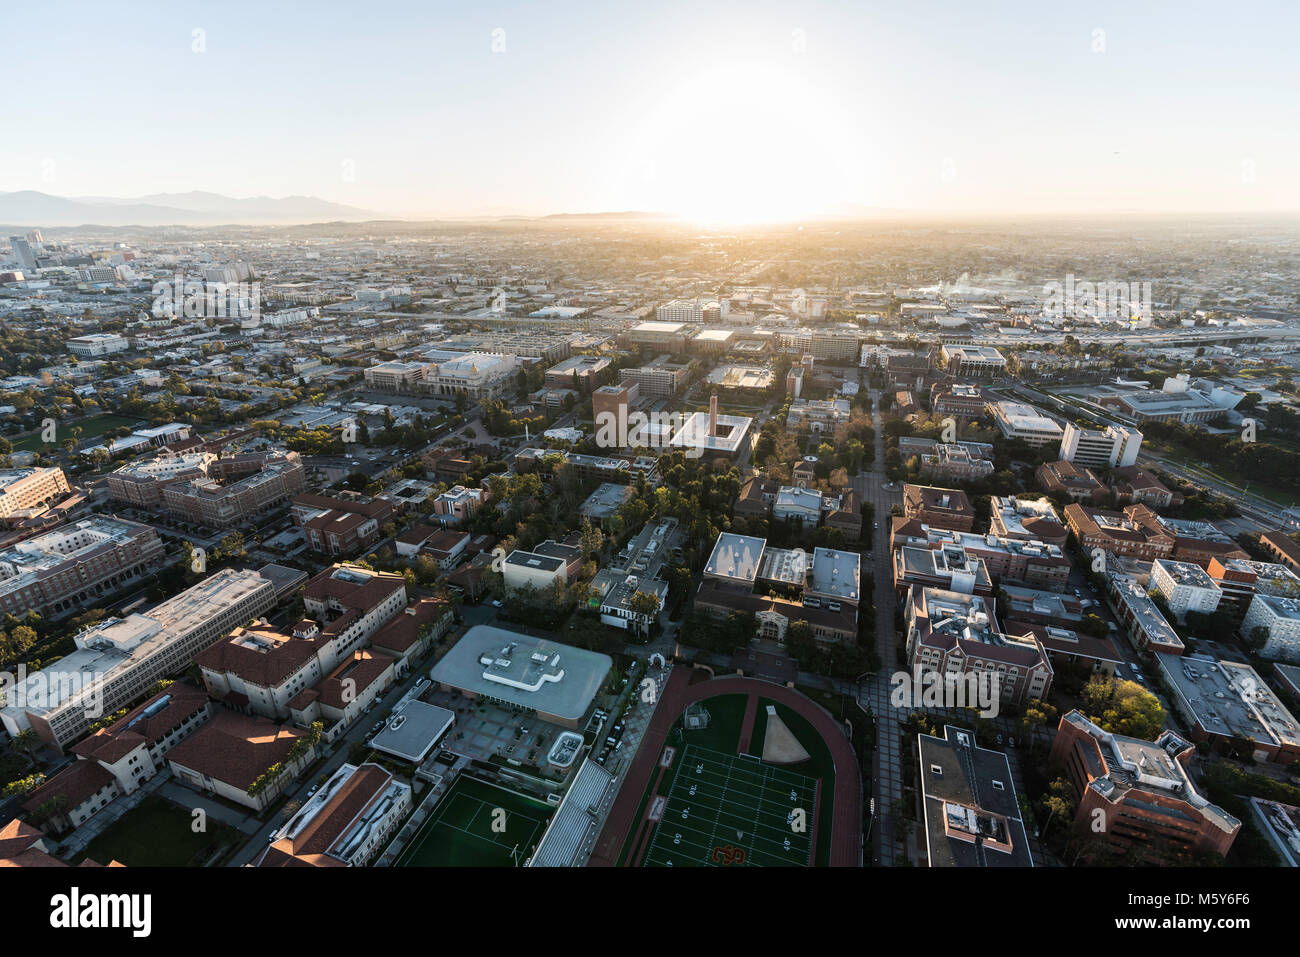 Los Angeles, Kalifornien, USA - 20. Februar 2018: Antenne sonnenaufgang Blick von der Universität von Südkalifornien Campus in der Nähe von Downtown LA. Stockfoto